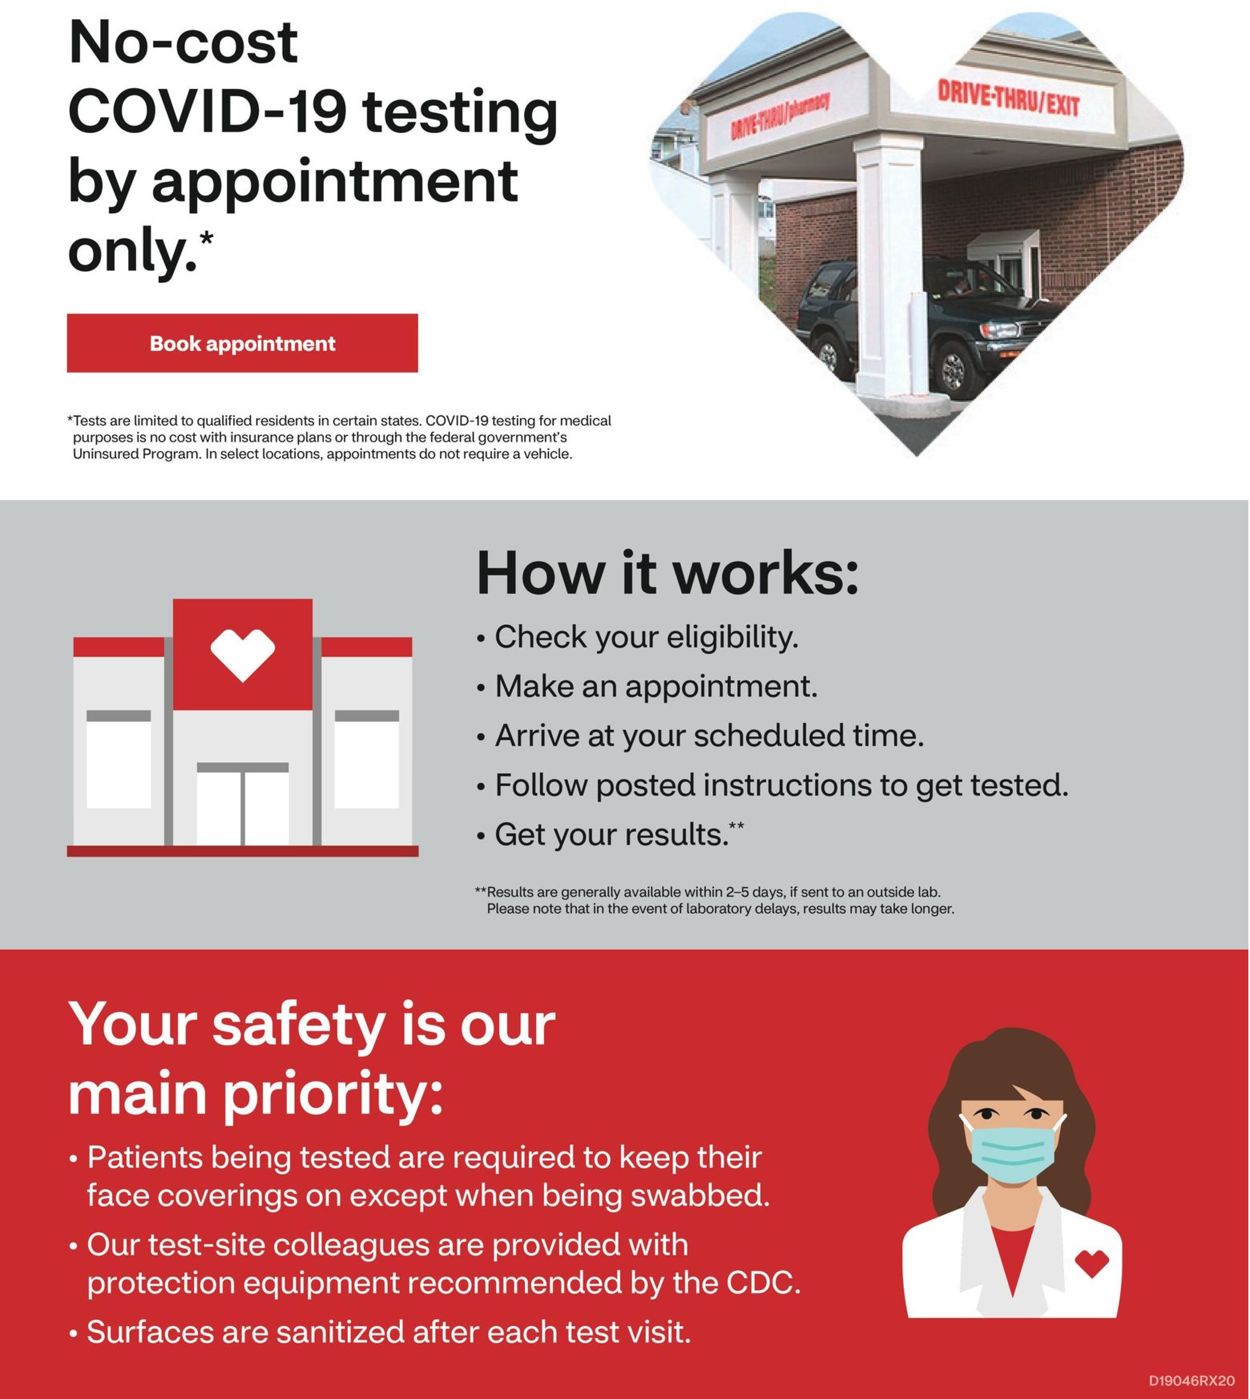 CVS Pharmacy Ad from 09/06/2020